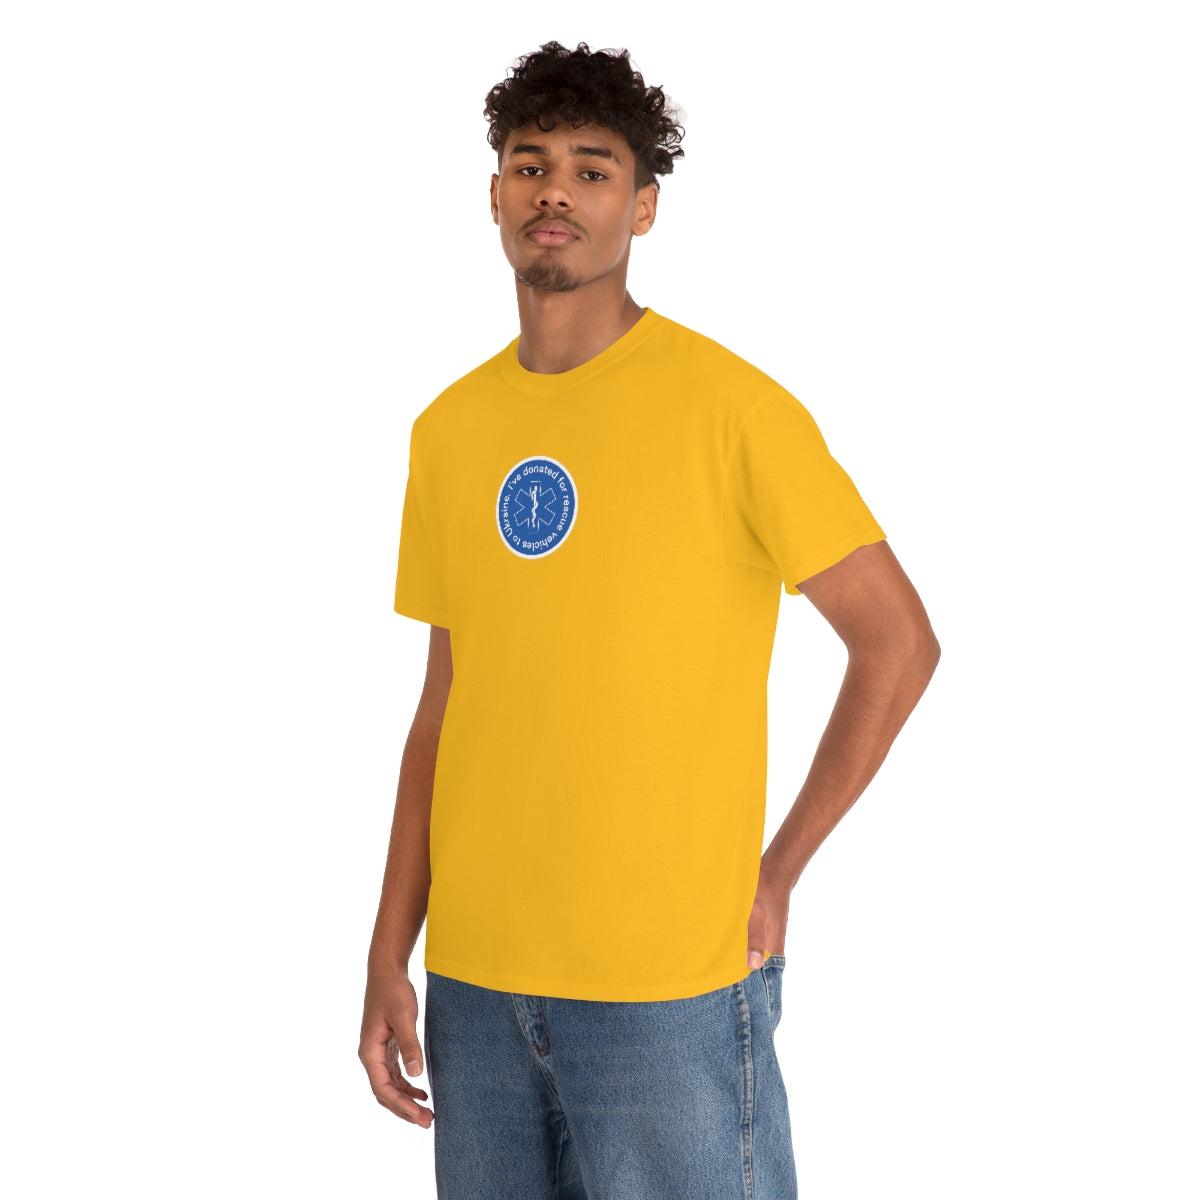 Donated Minimalistic - Unisex Tshirt